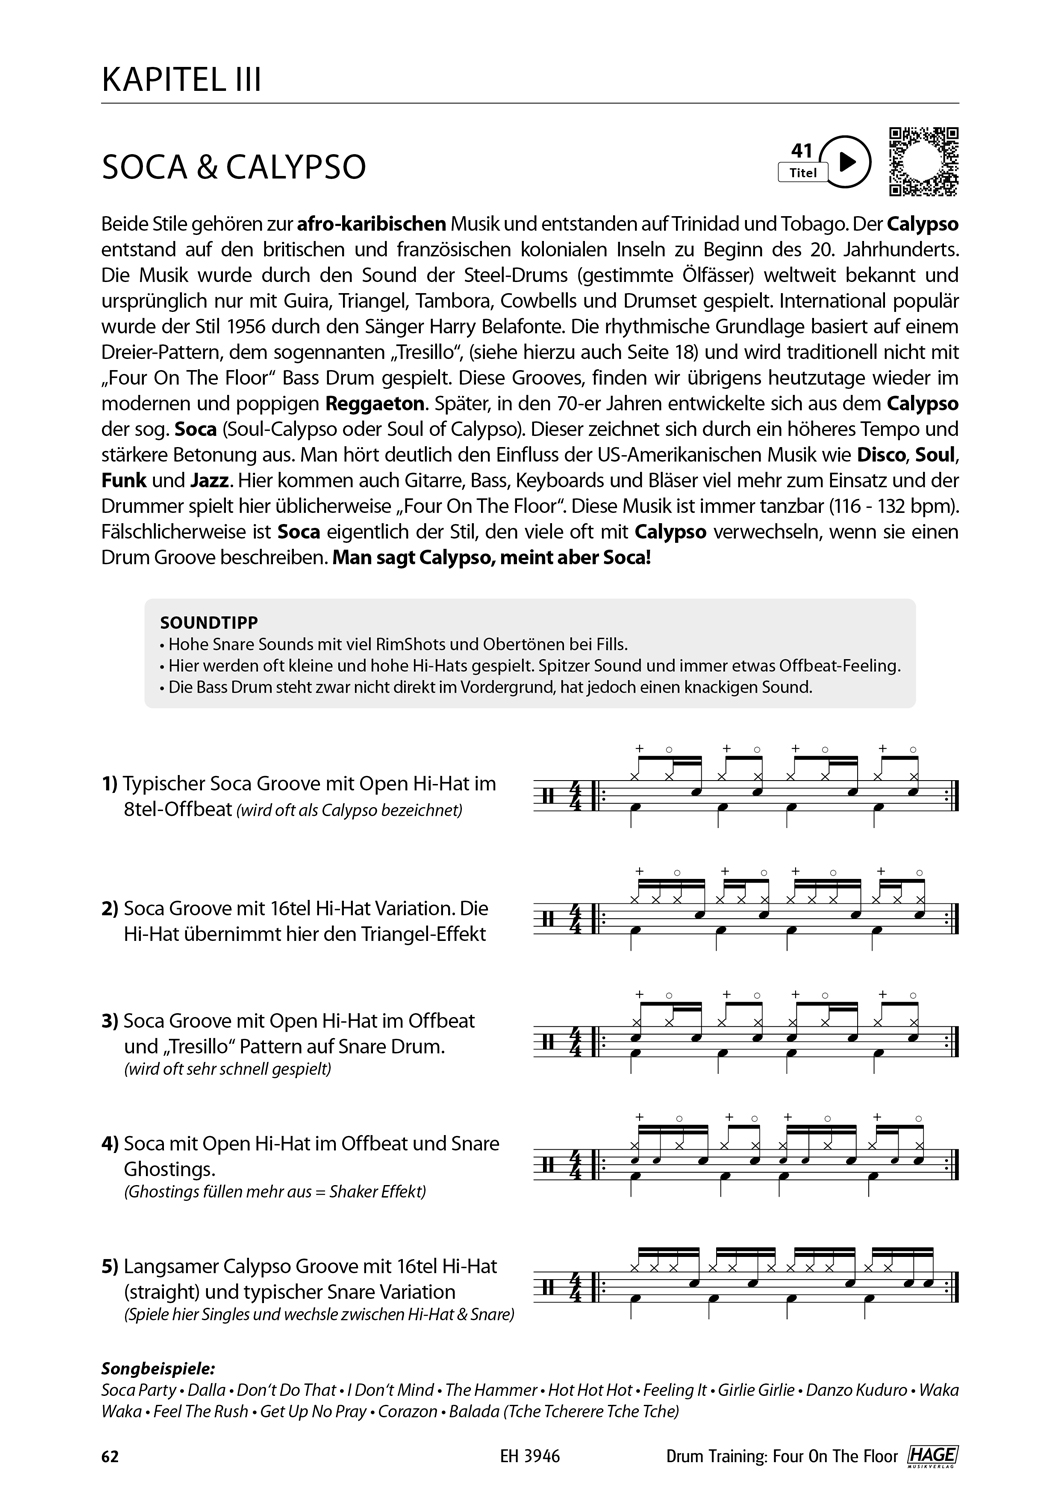 Drum Training Four On The Floor Seiten 11